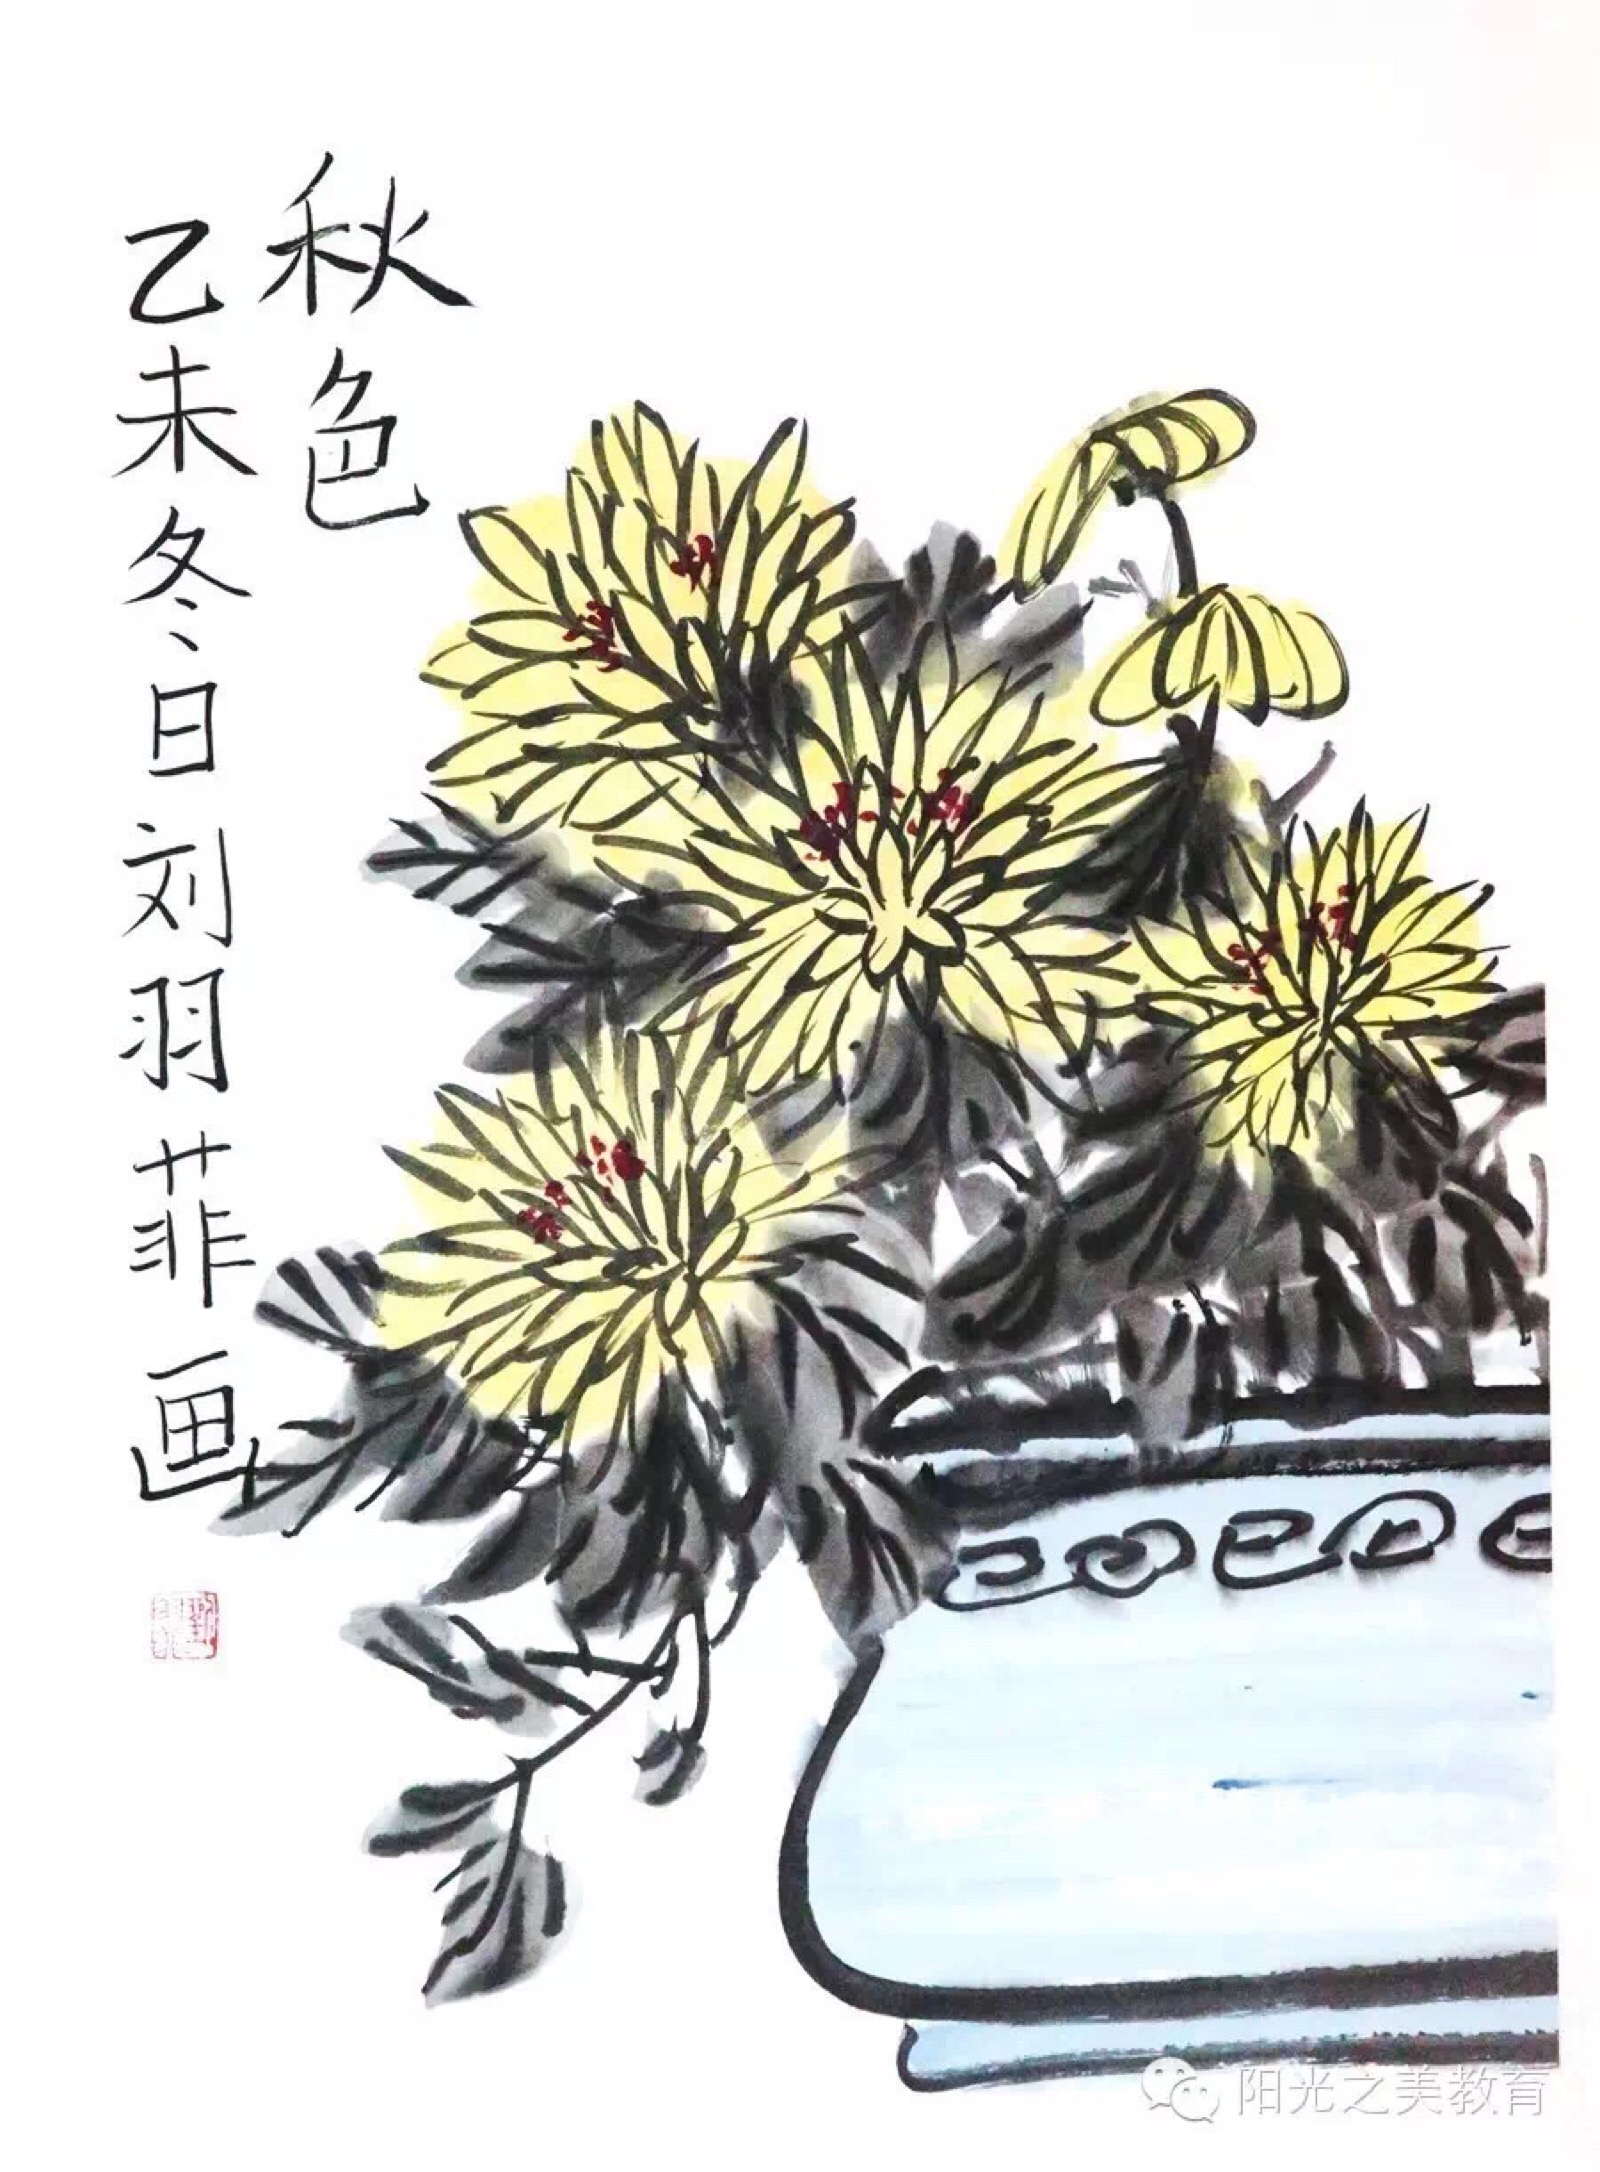 分享来自日本江户时期的画家伊藤若冲绘画作品 他发展出一种独特的写实风格 并从尾形光琳的作品中学习装饰技巧 他为京都相国寺所做的一套30幅 动植彩绘 和隔扇画 群鸡图 是其最著名的作品 堆糖 美图壁纸兴趣社区